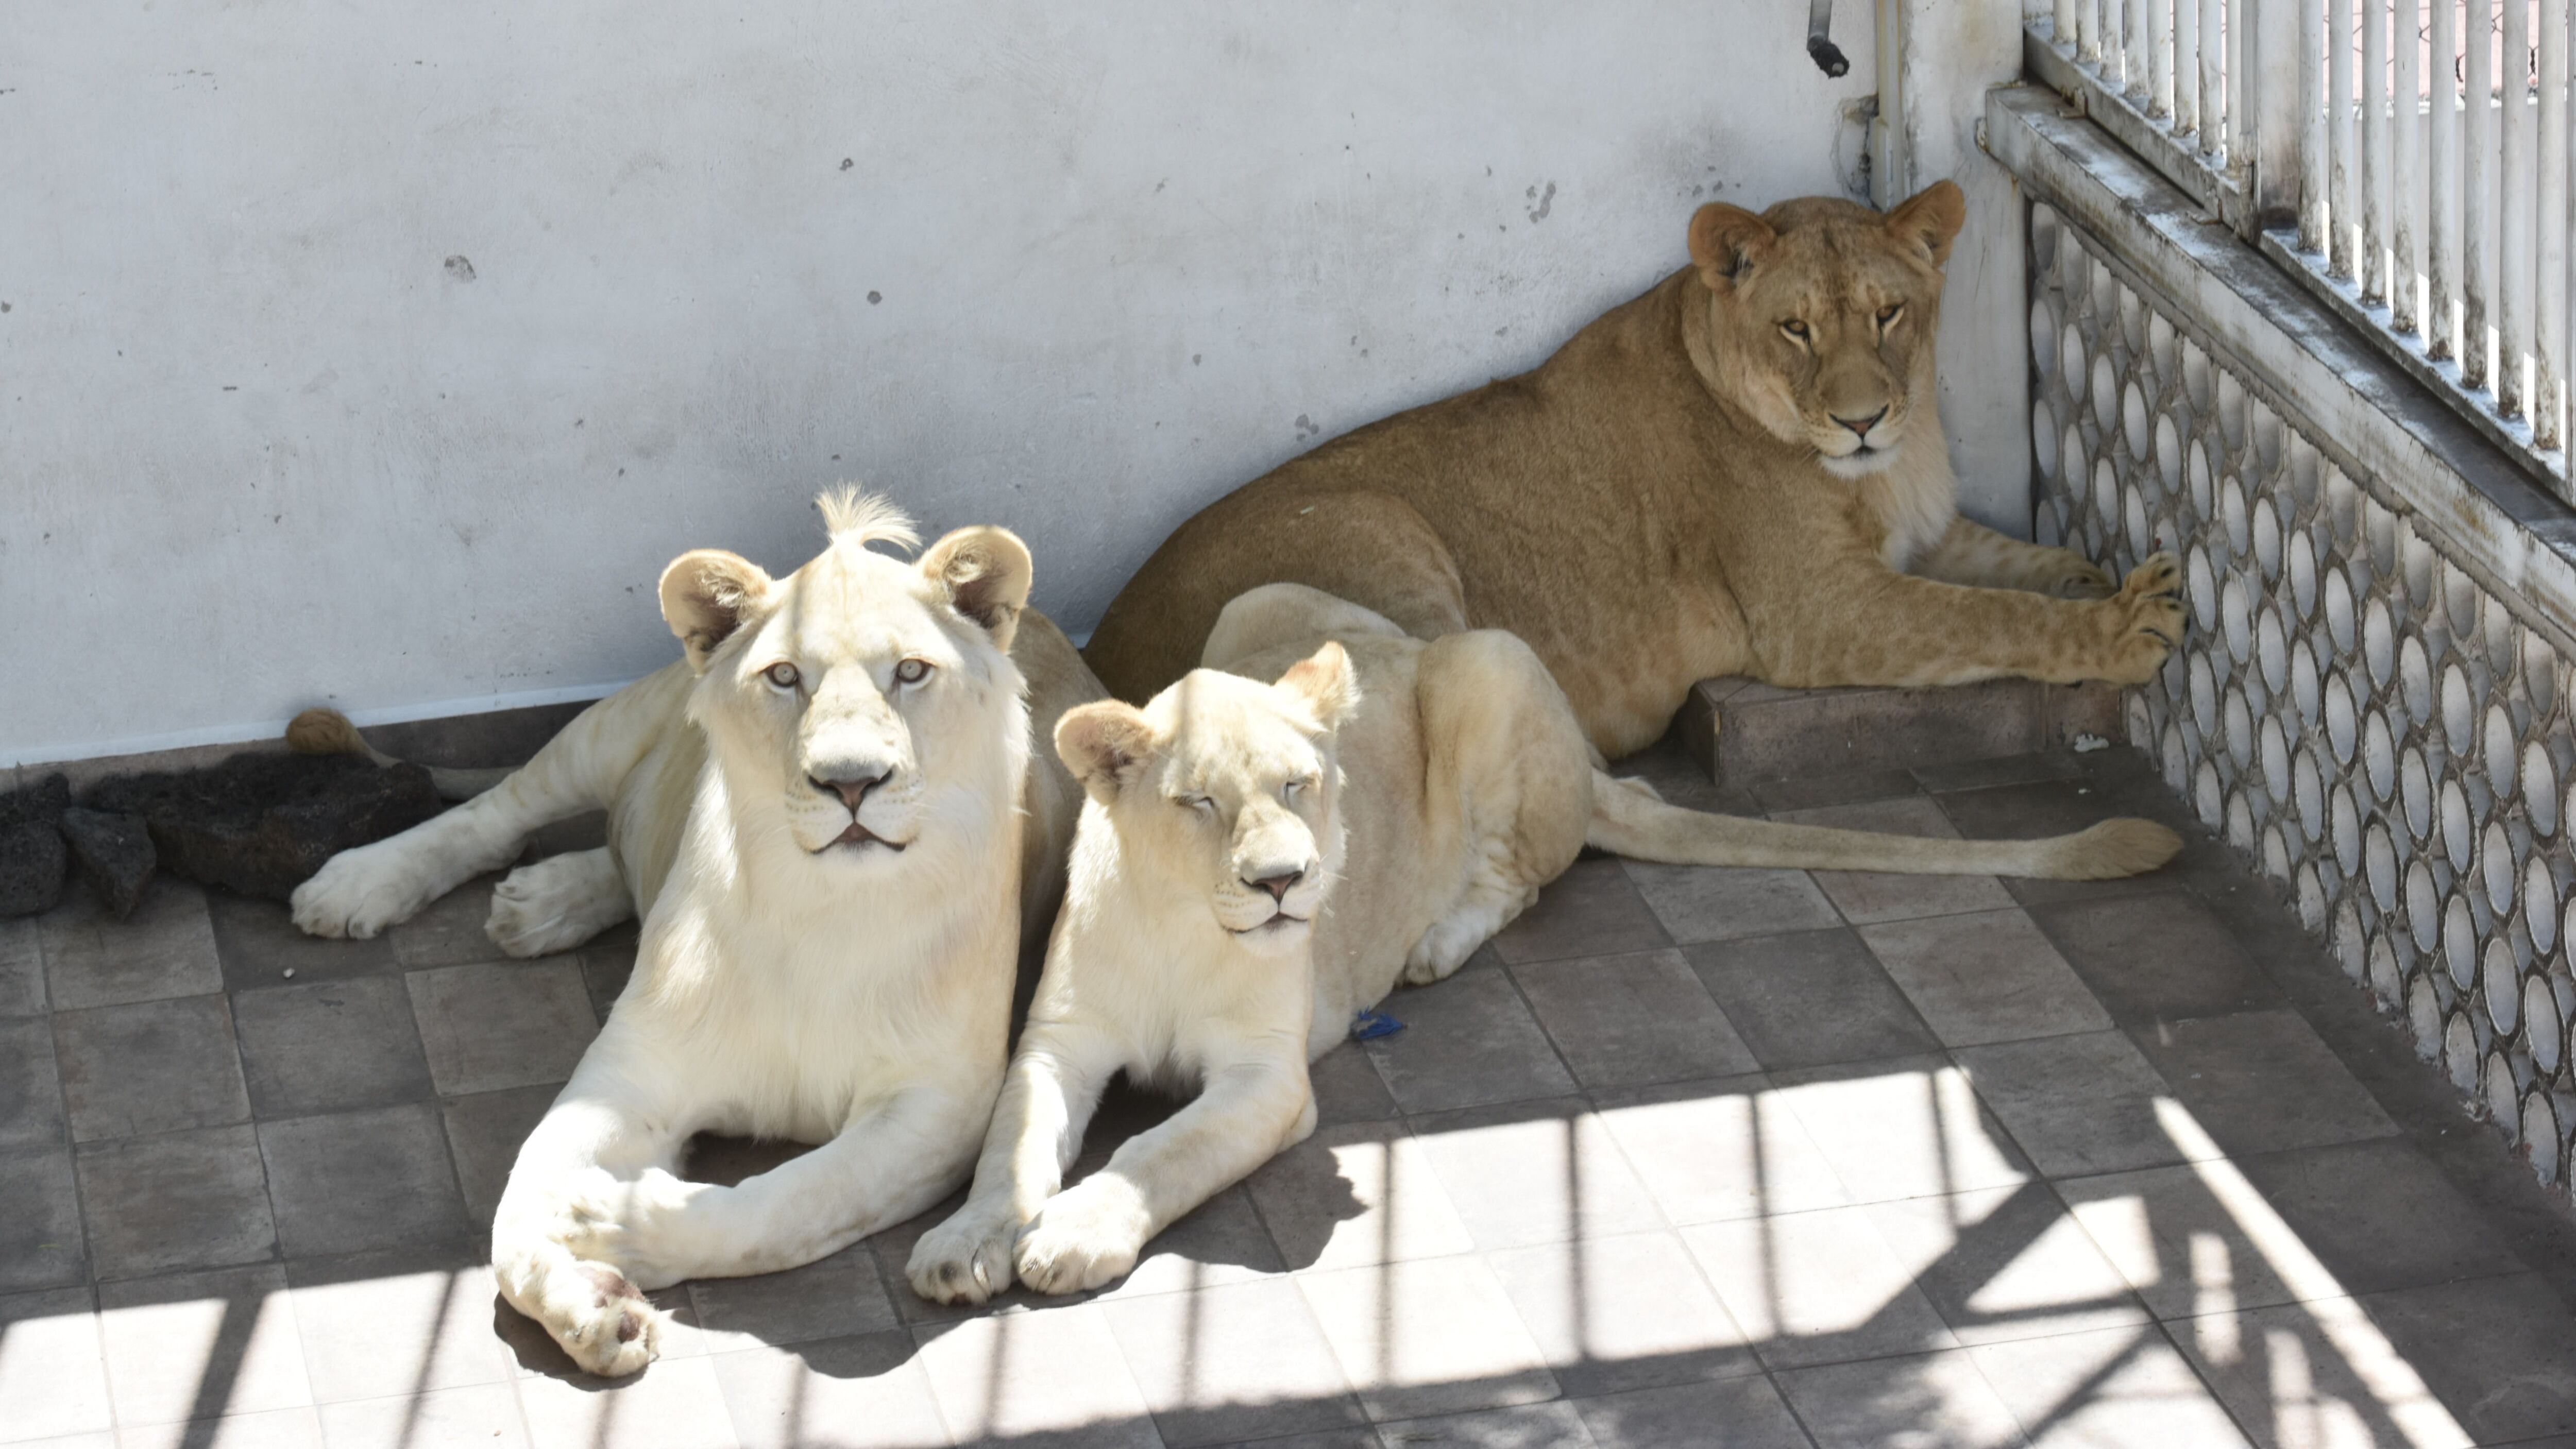 Aseguran por segunda vez a leones que vivían en azotea de Iztacalco – El  Financiero